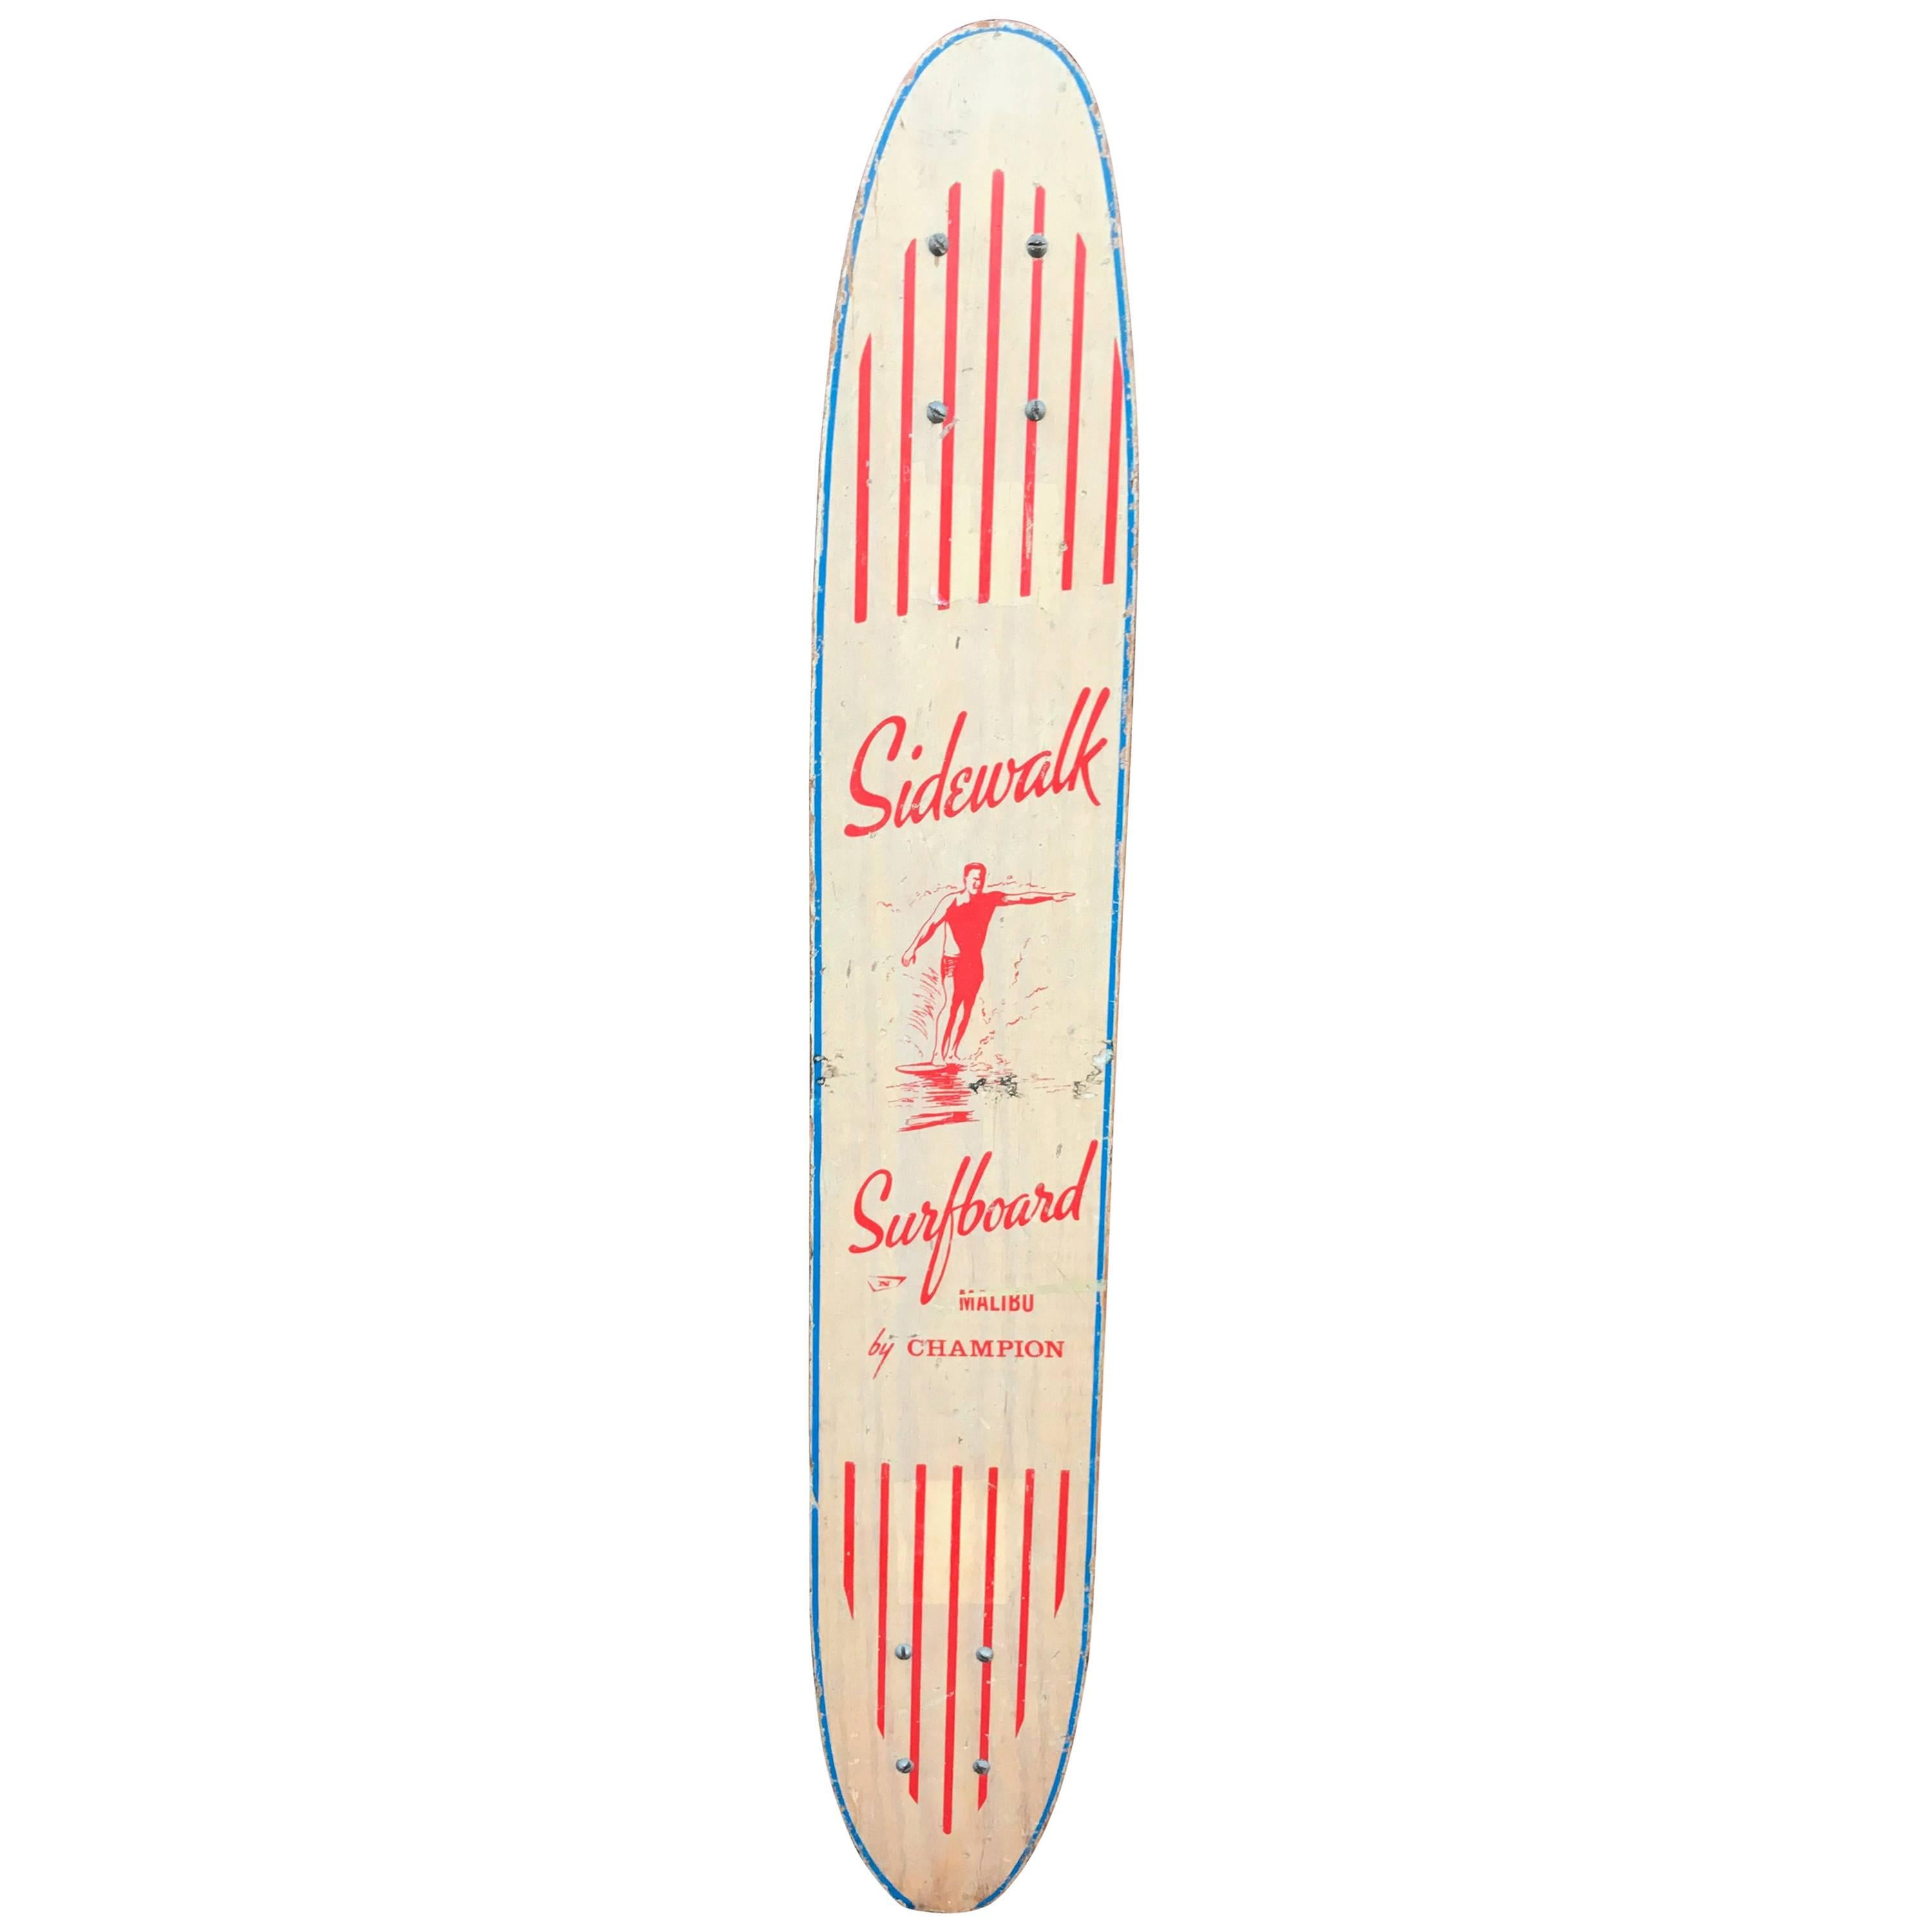 1960s Sidewalk Surfboard Malibu by Champion Longboard Skateboard Deck